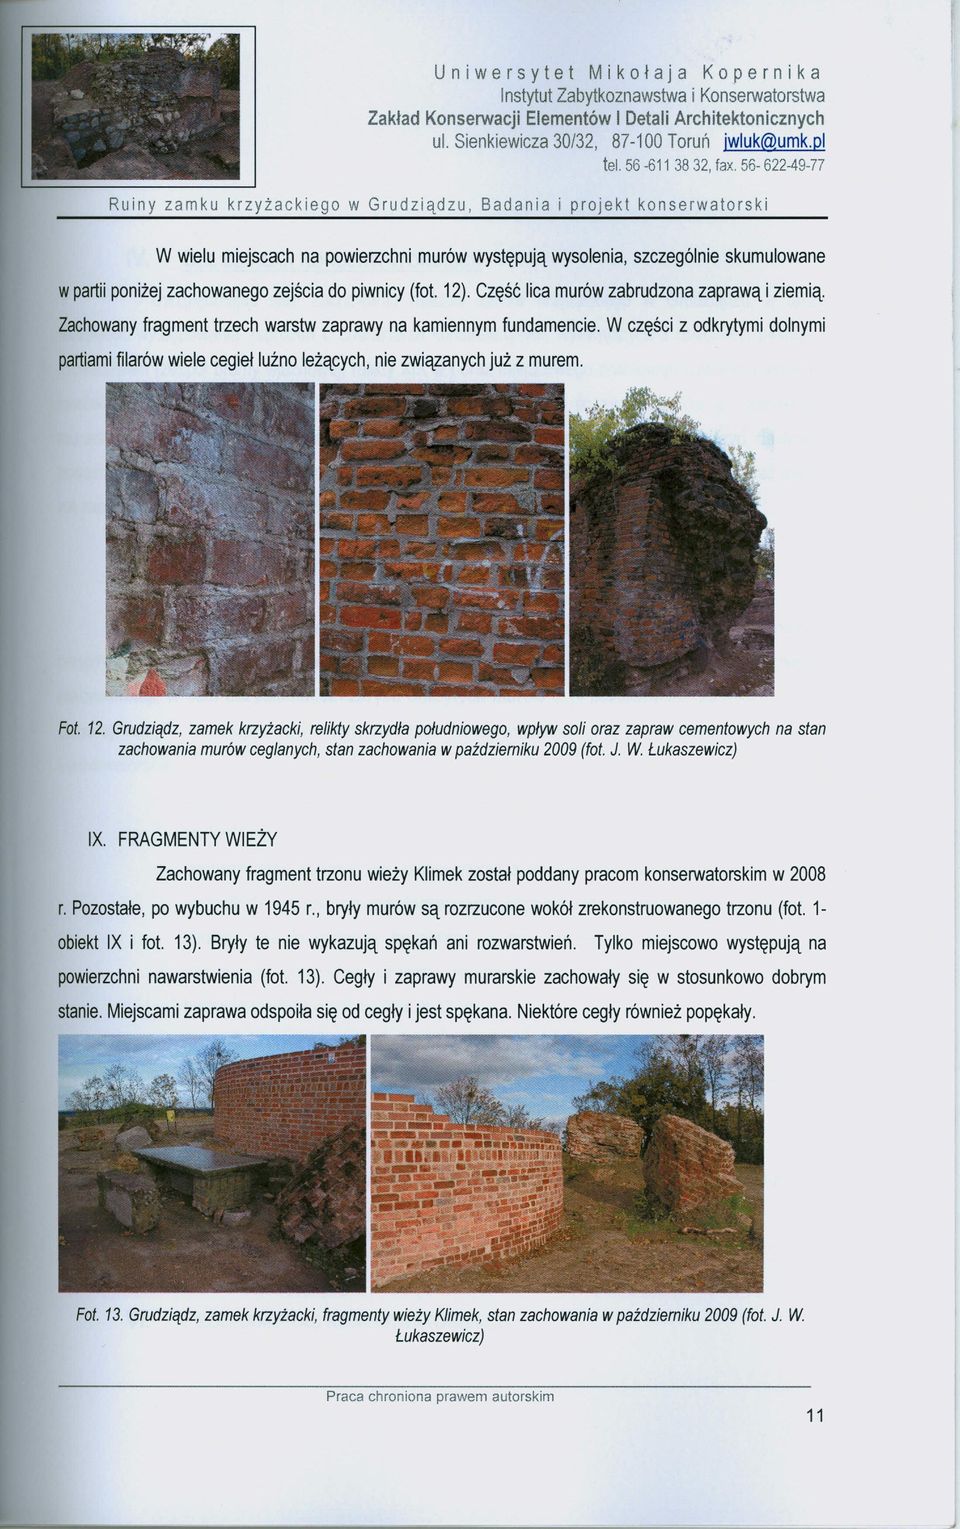 W części z odkrytymi dolnymi partiami filarów wiele cegieł luźno leżących, nie związanych już z murem. Fot. 12.